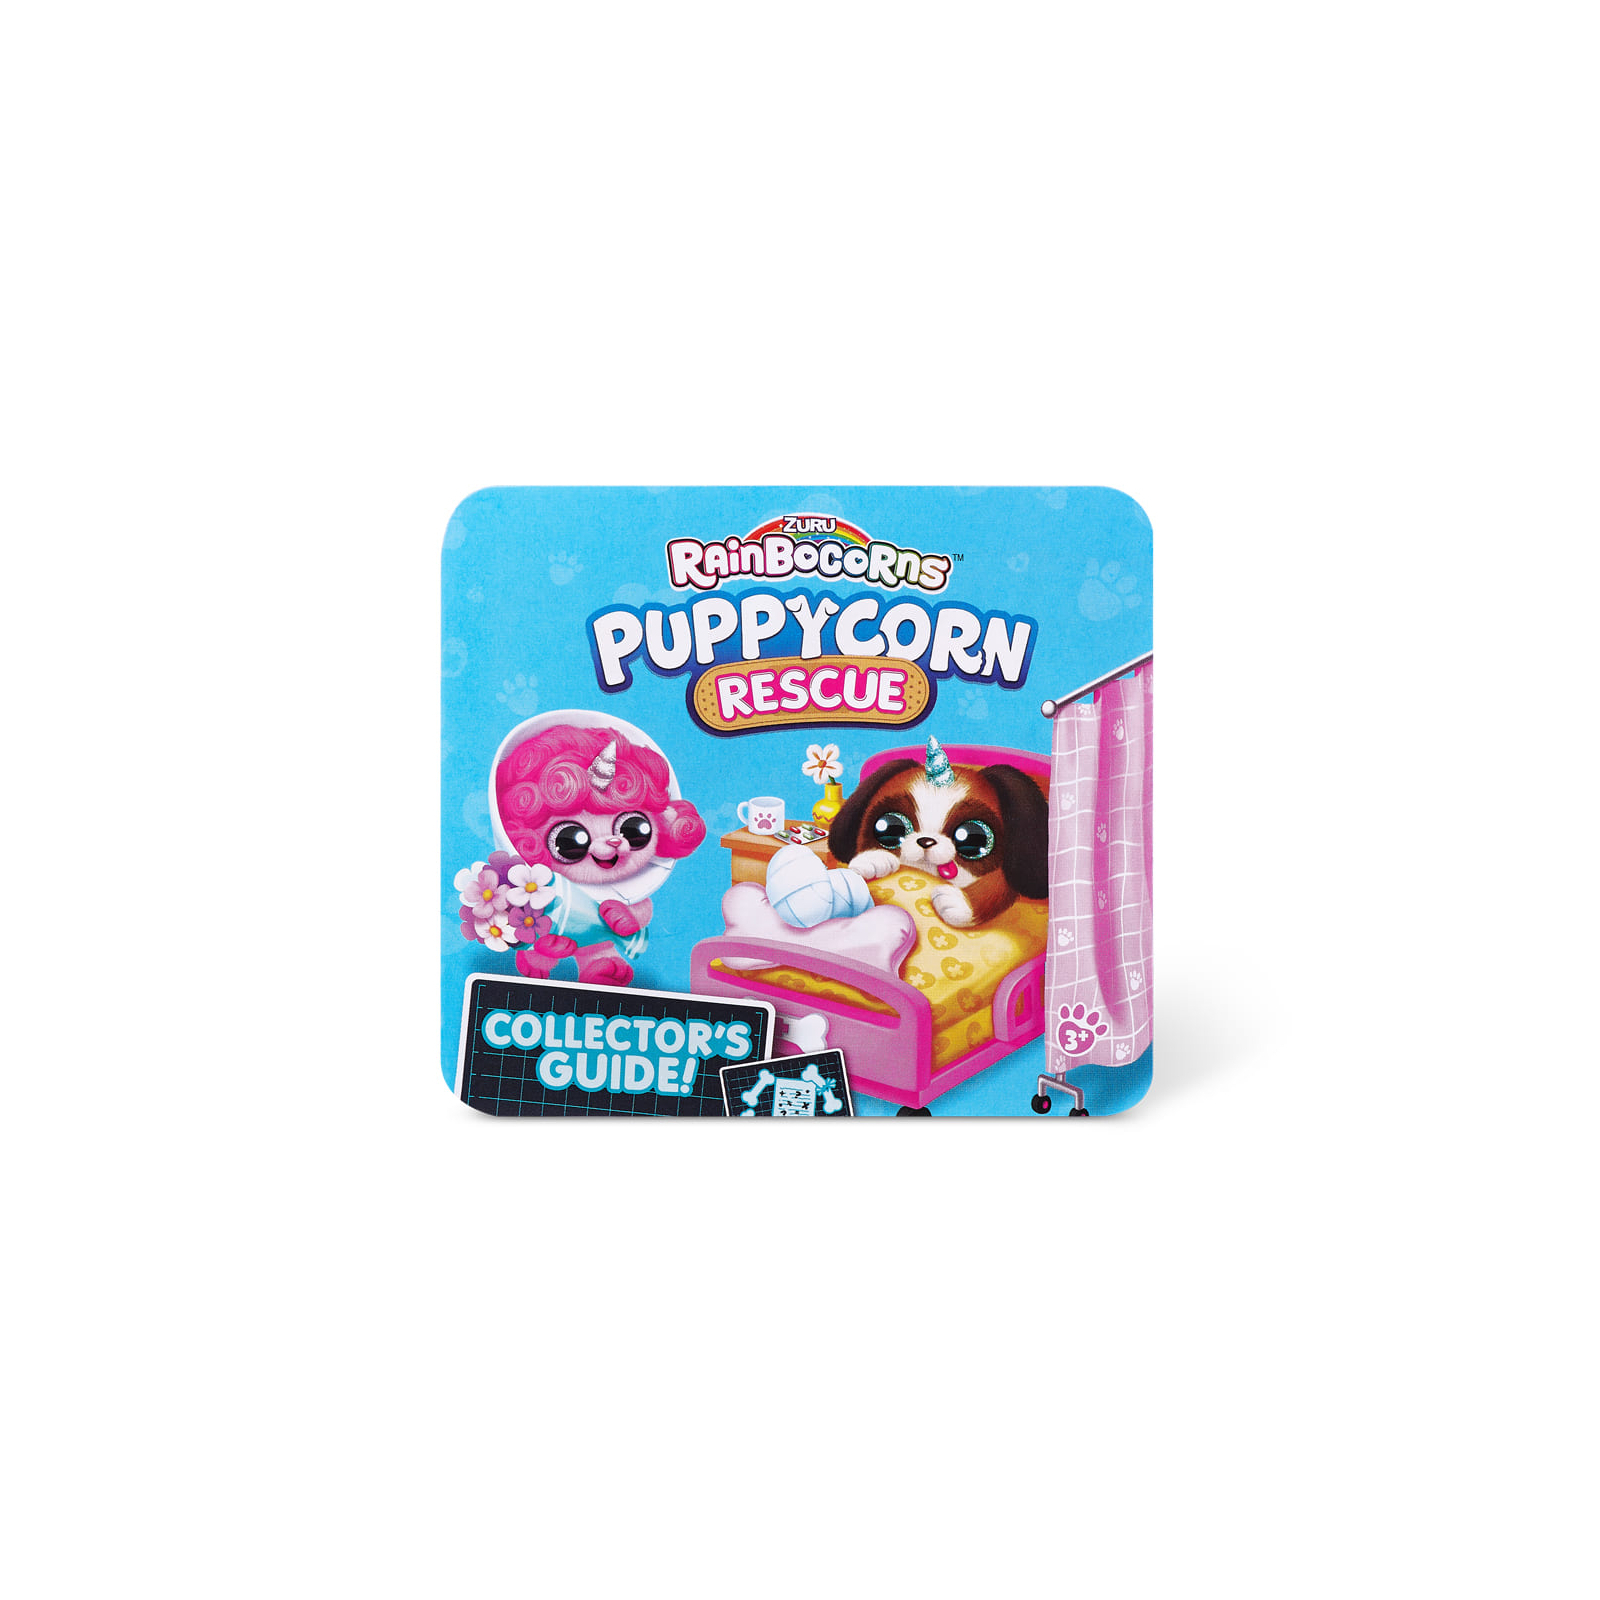 Мягкая игрушка Rainbocorns сюрприз G серия Puppycorn Rescue (9261G) изображение 14